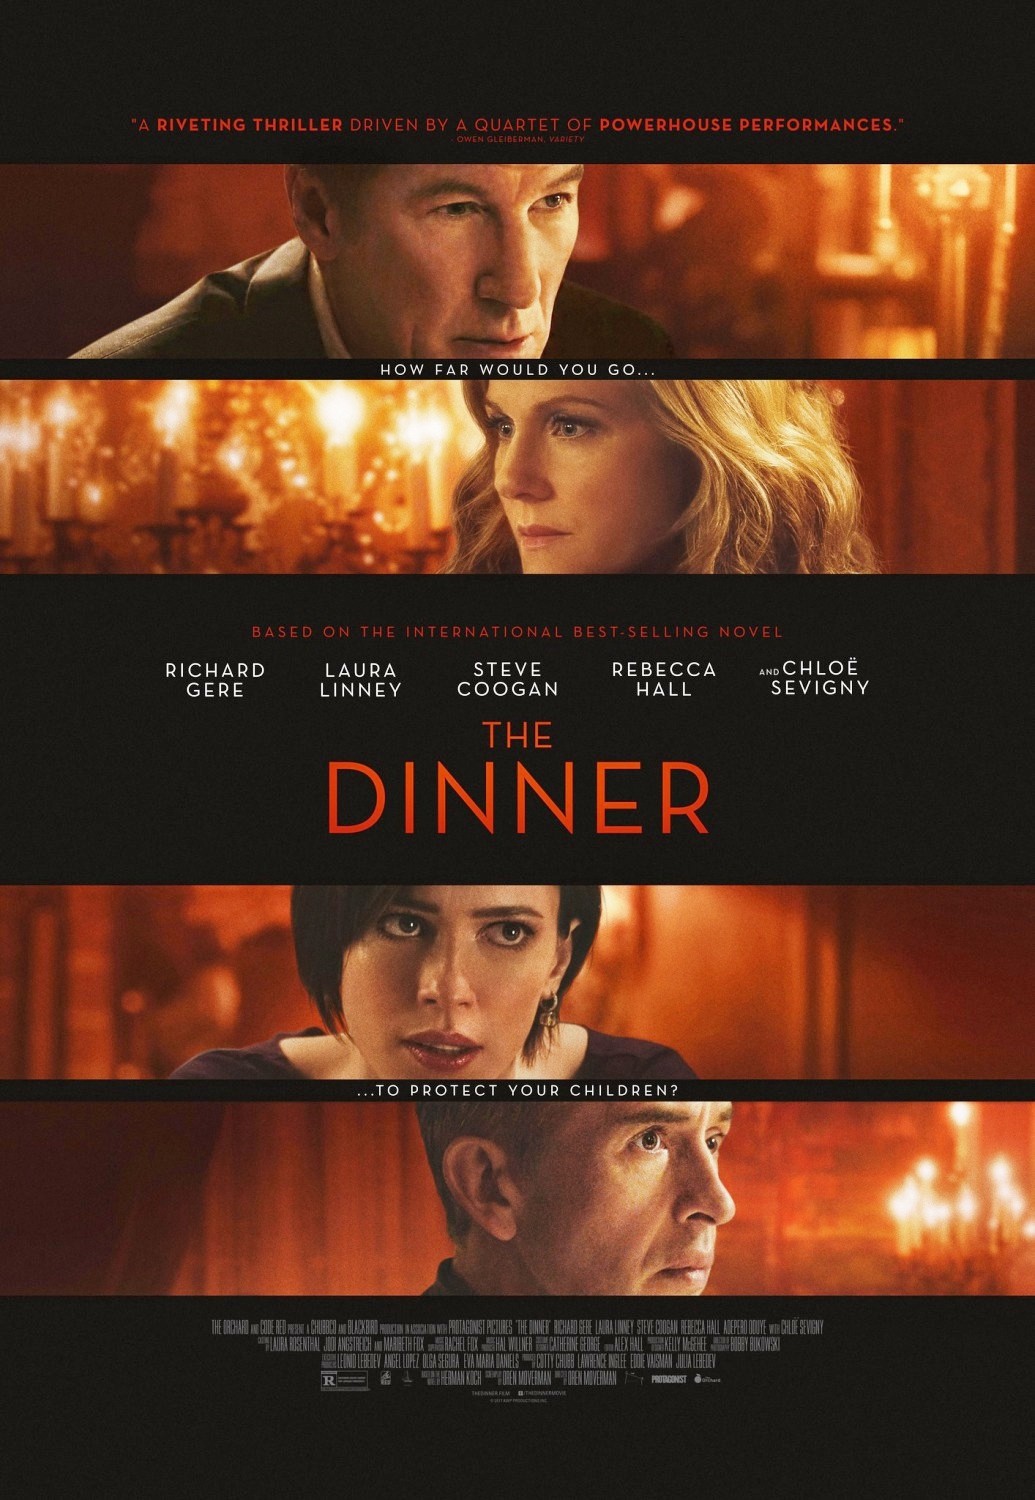 the-dinner-trailer-italiano-e-locandina-del-film-con-richard-gere-e-laura-linney-2.jpg